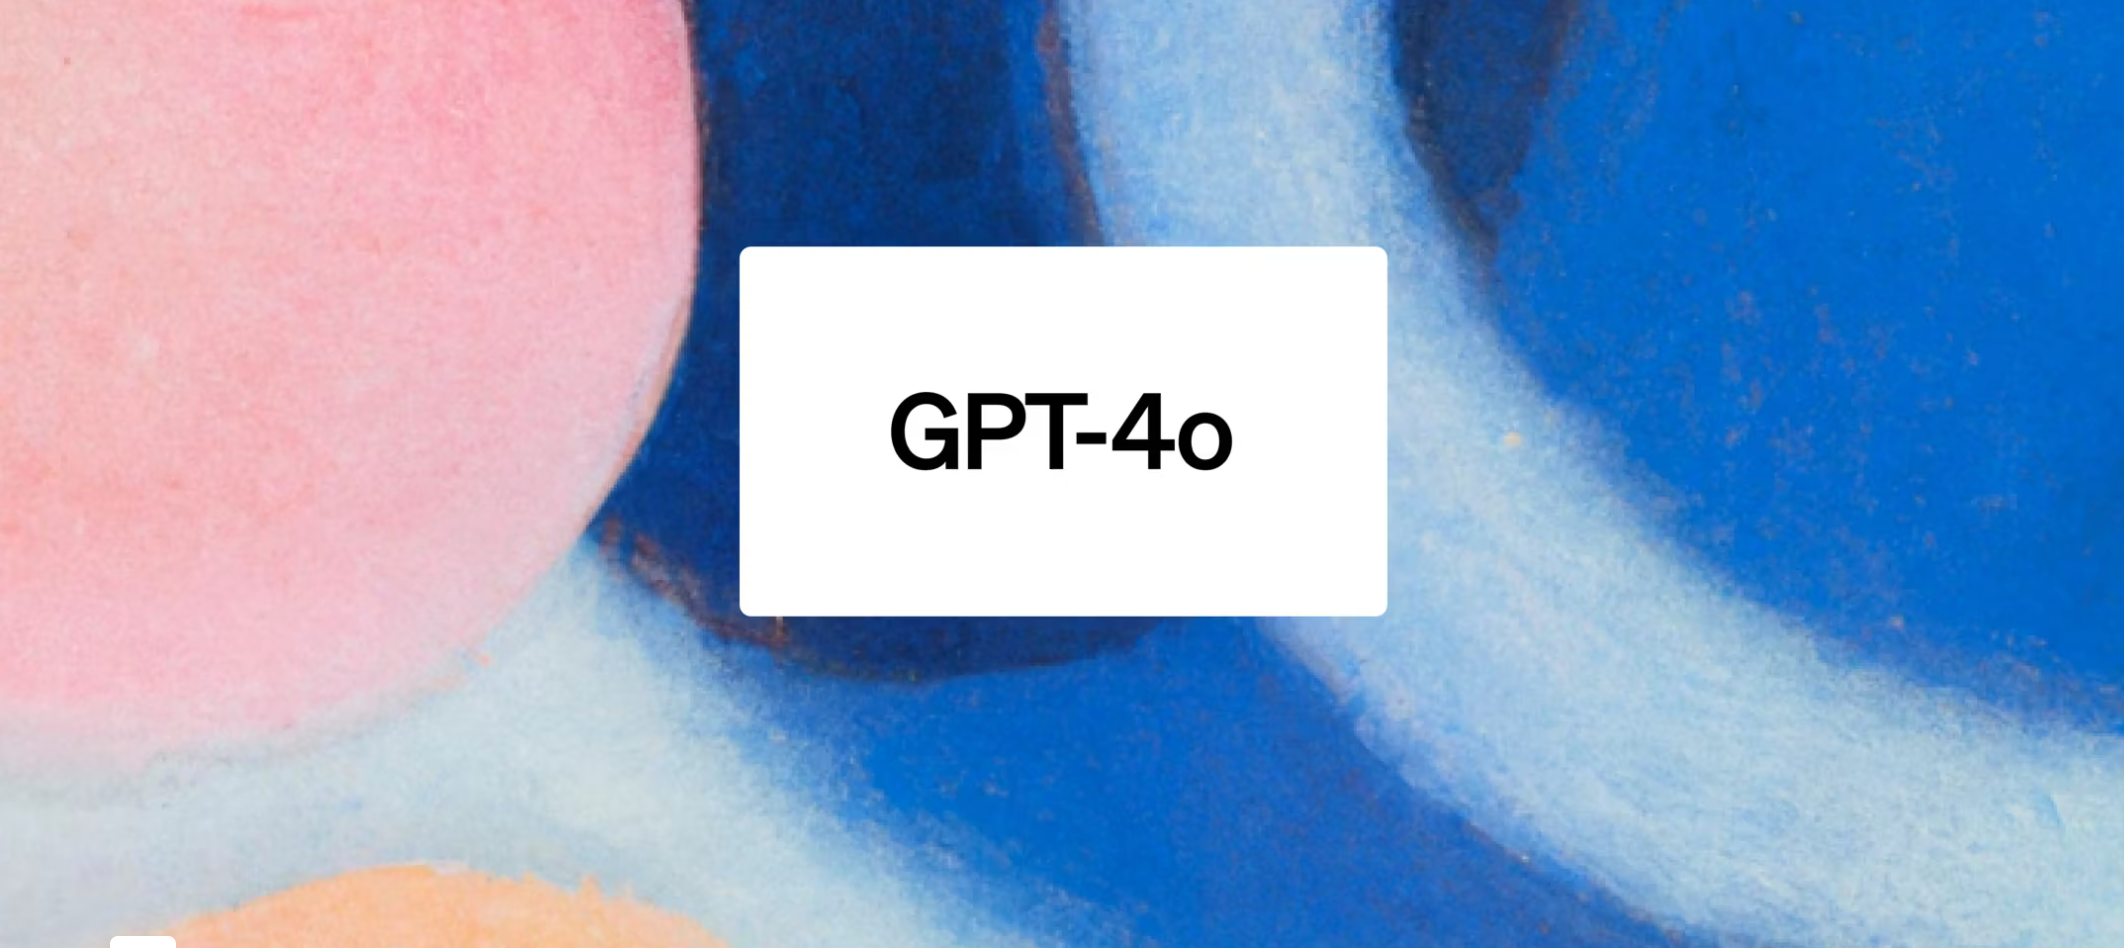 Mik az új specifikus fejlesztések? A GPT-4o verzió újdonságai a GPT-4-hez képest